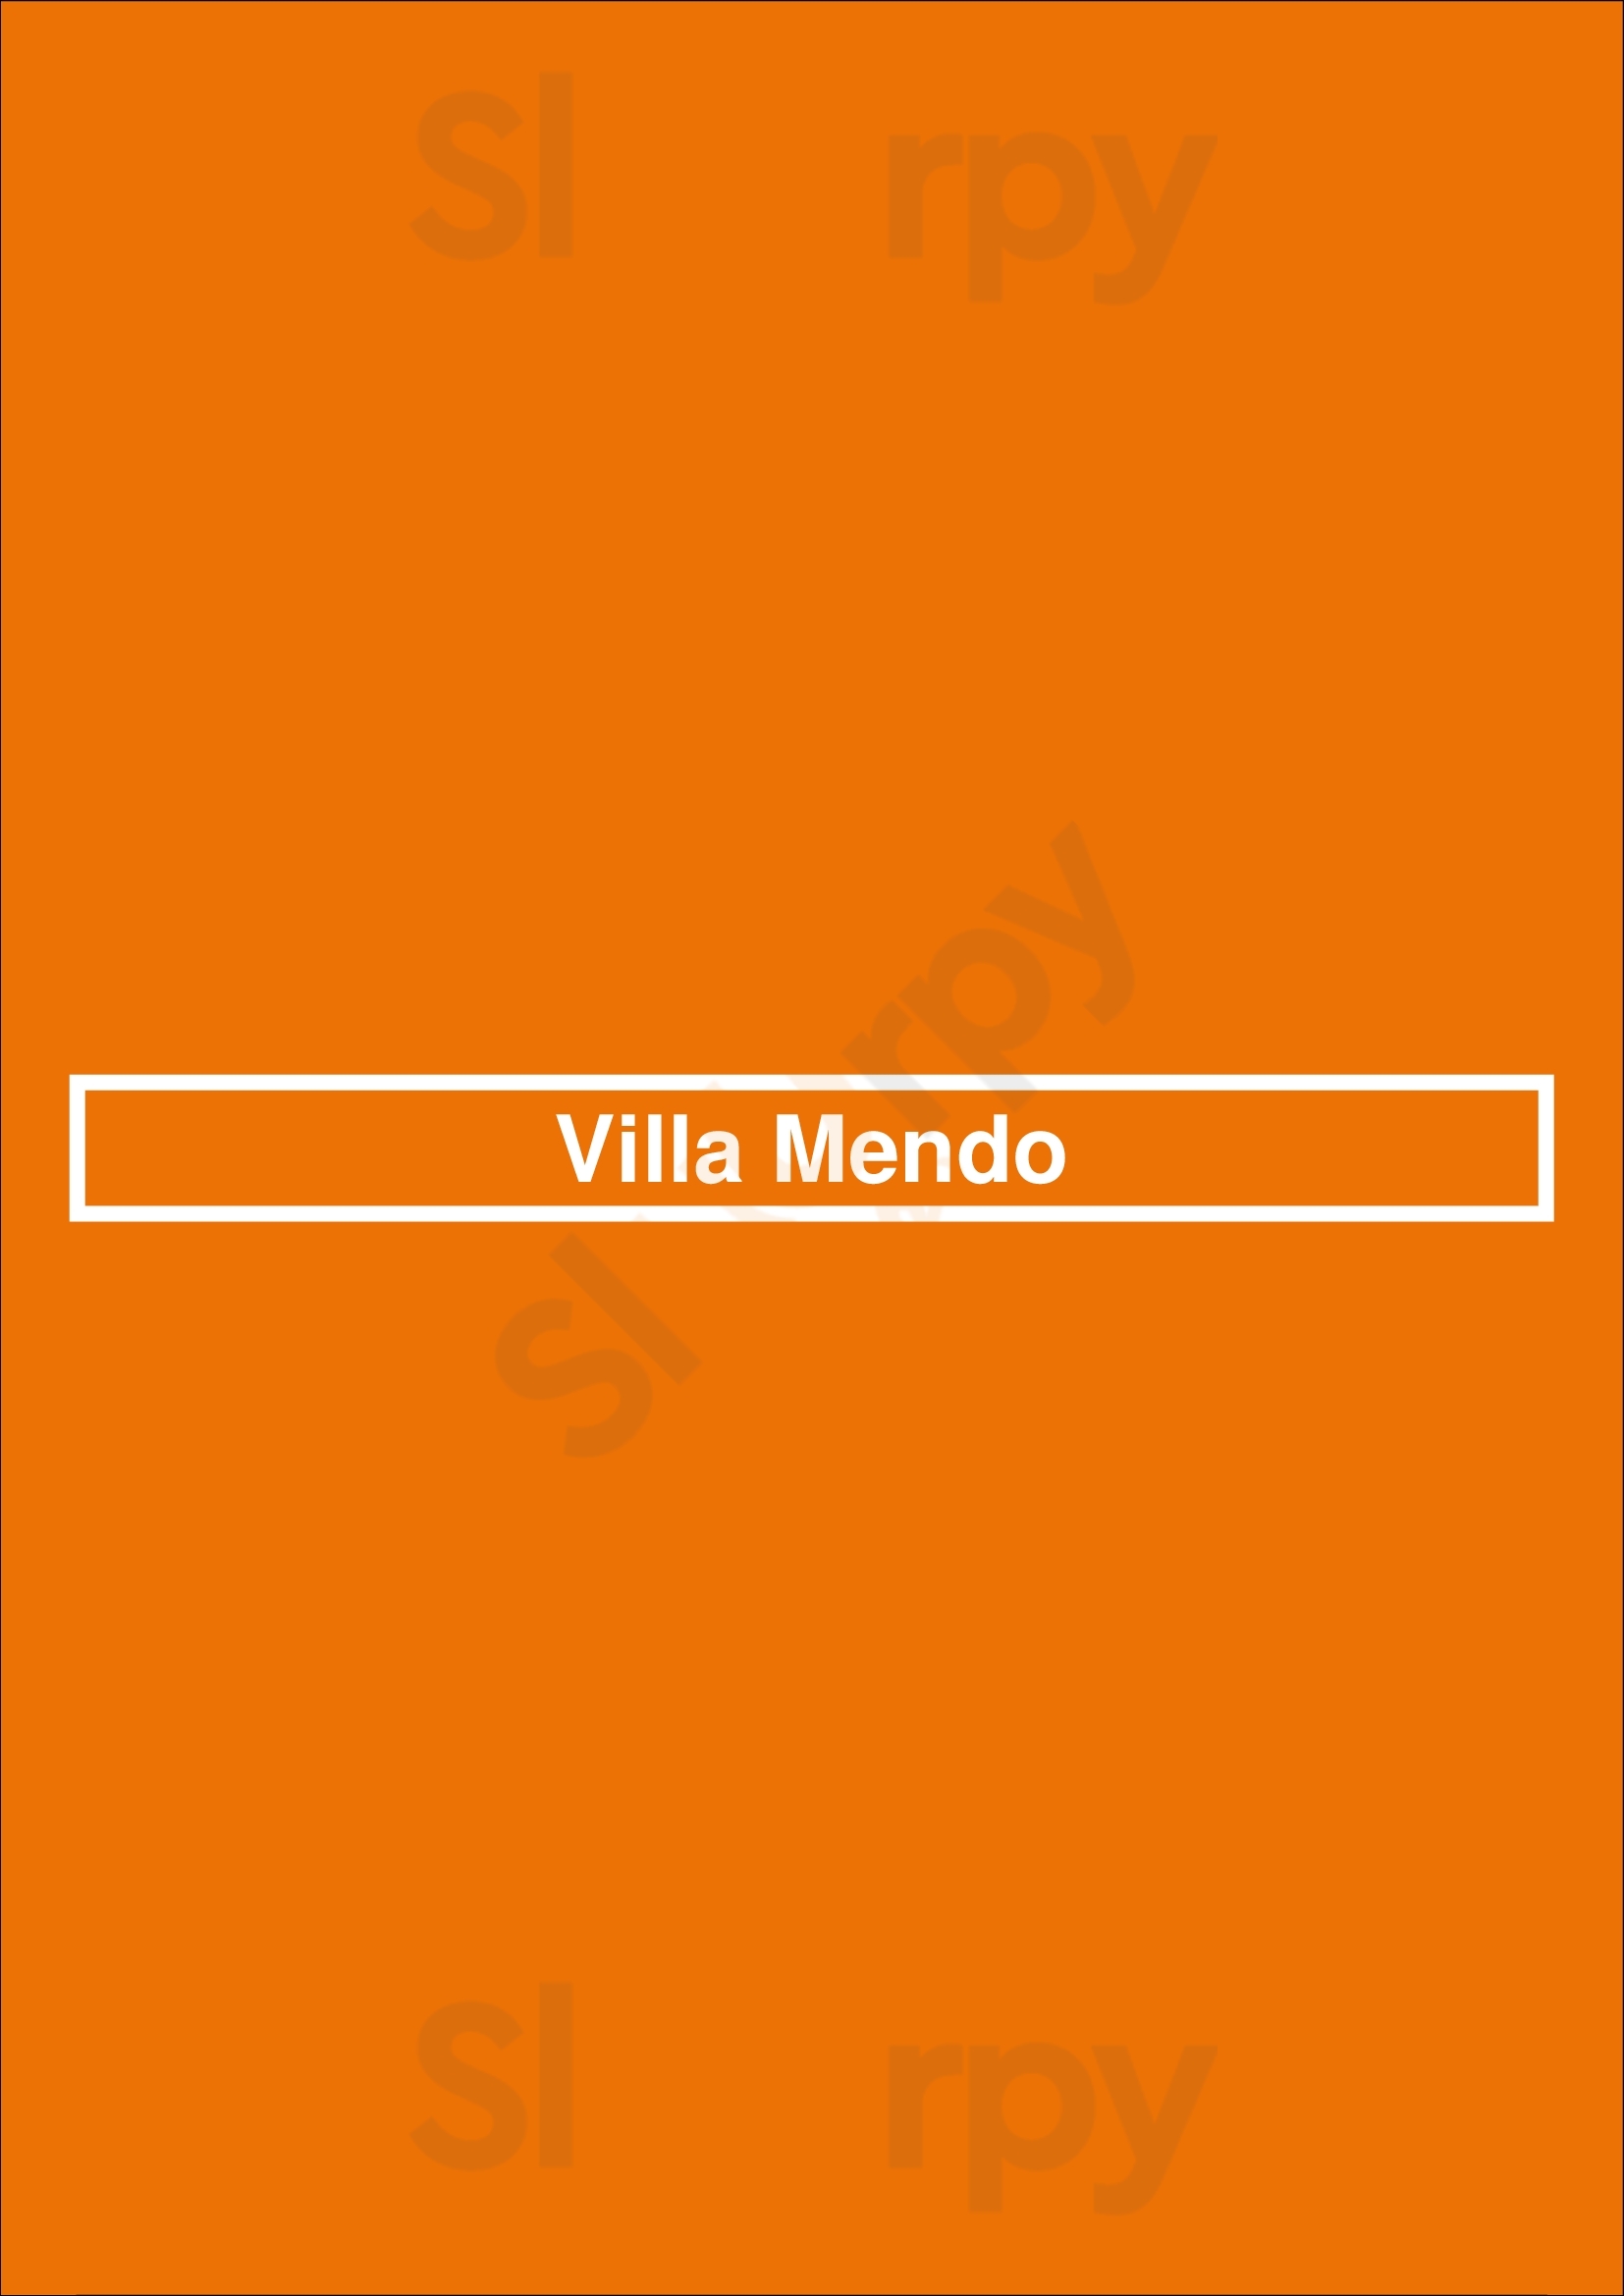 Villa Mendo Póvoa de Varzim Menu - 1